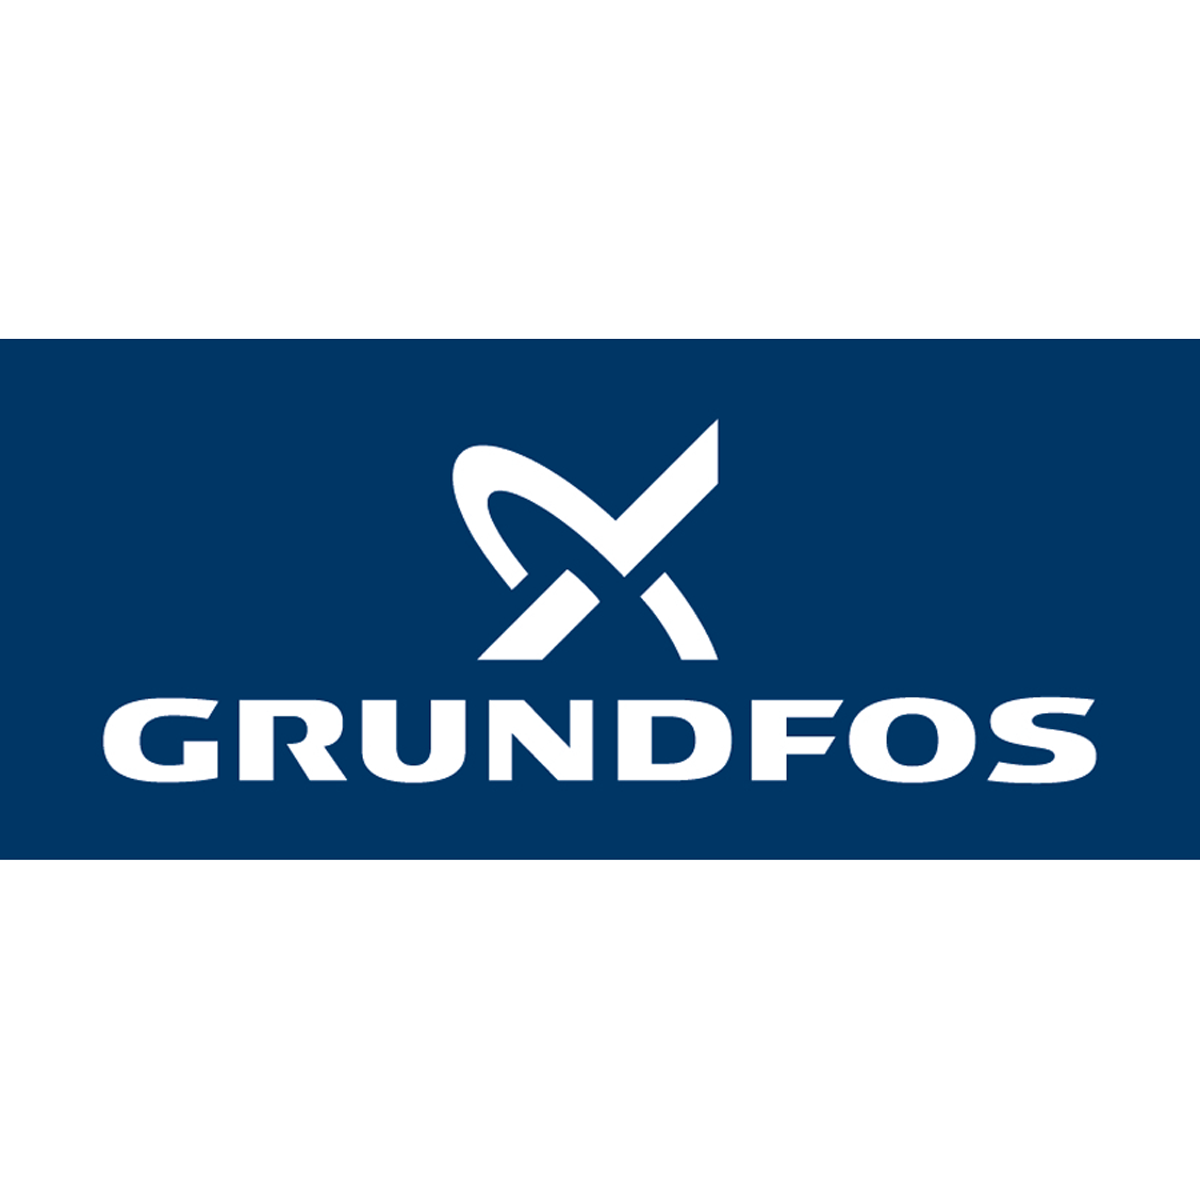 Grundfos GmbH